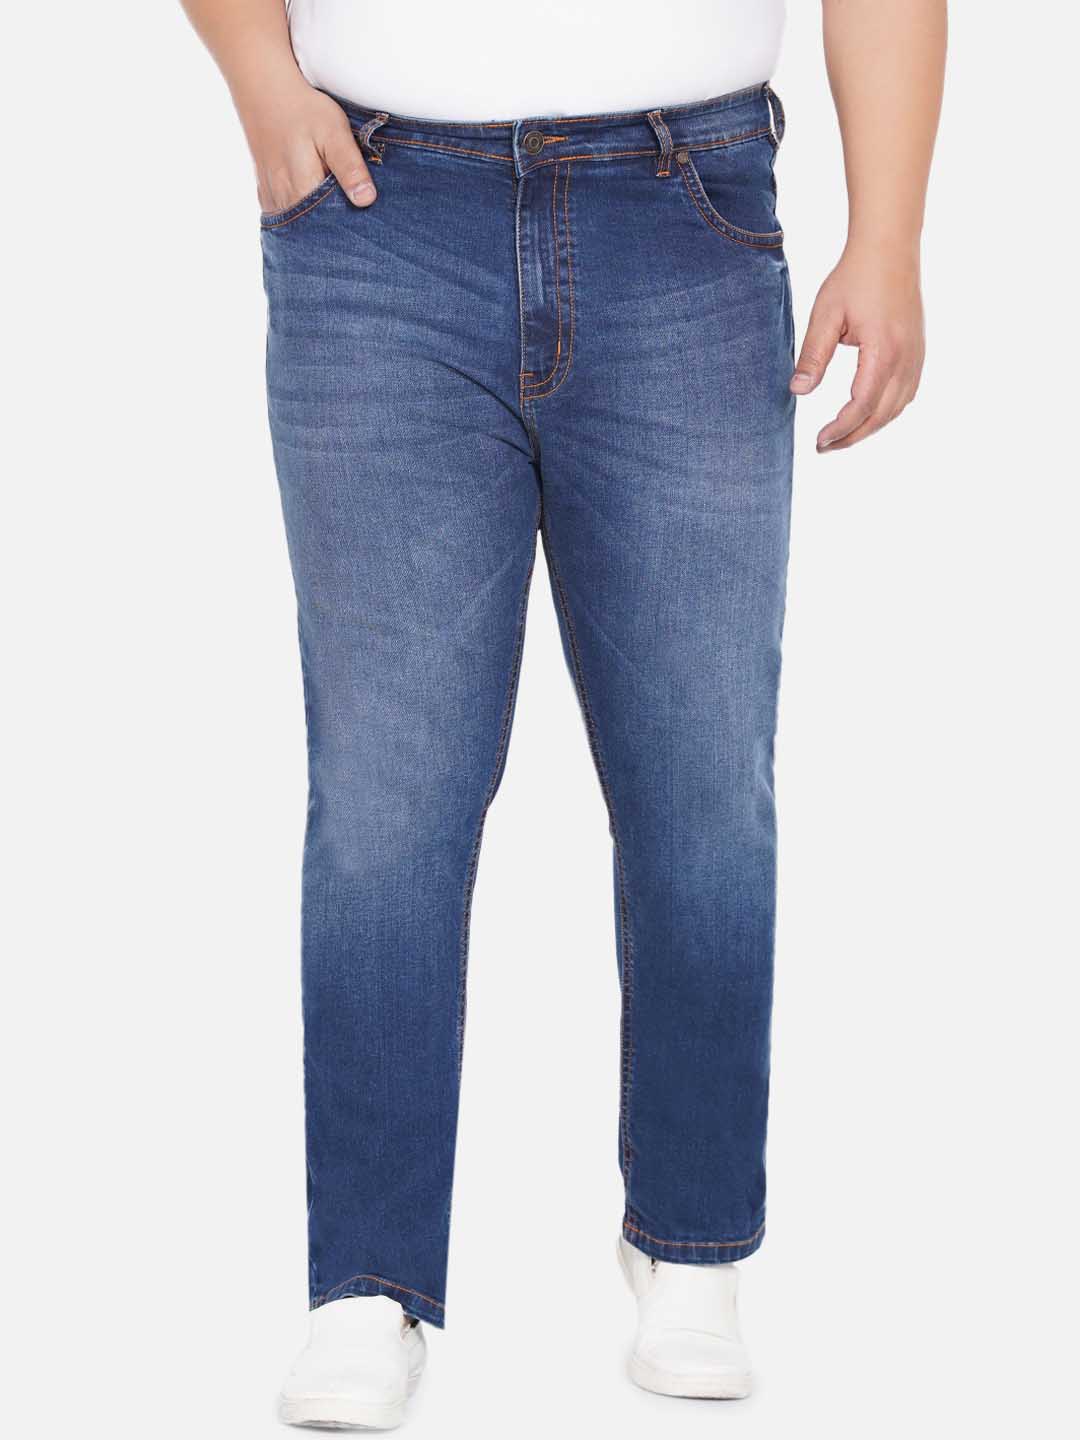 bottomwear/jeans/JPJ12238/jpj12238-2.jpg